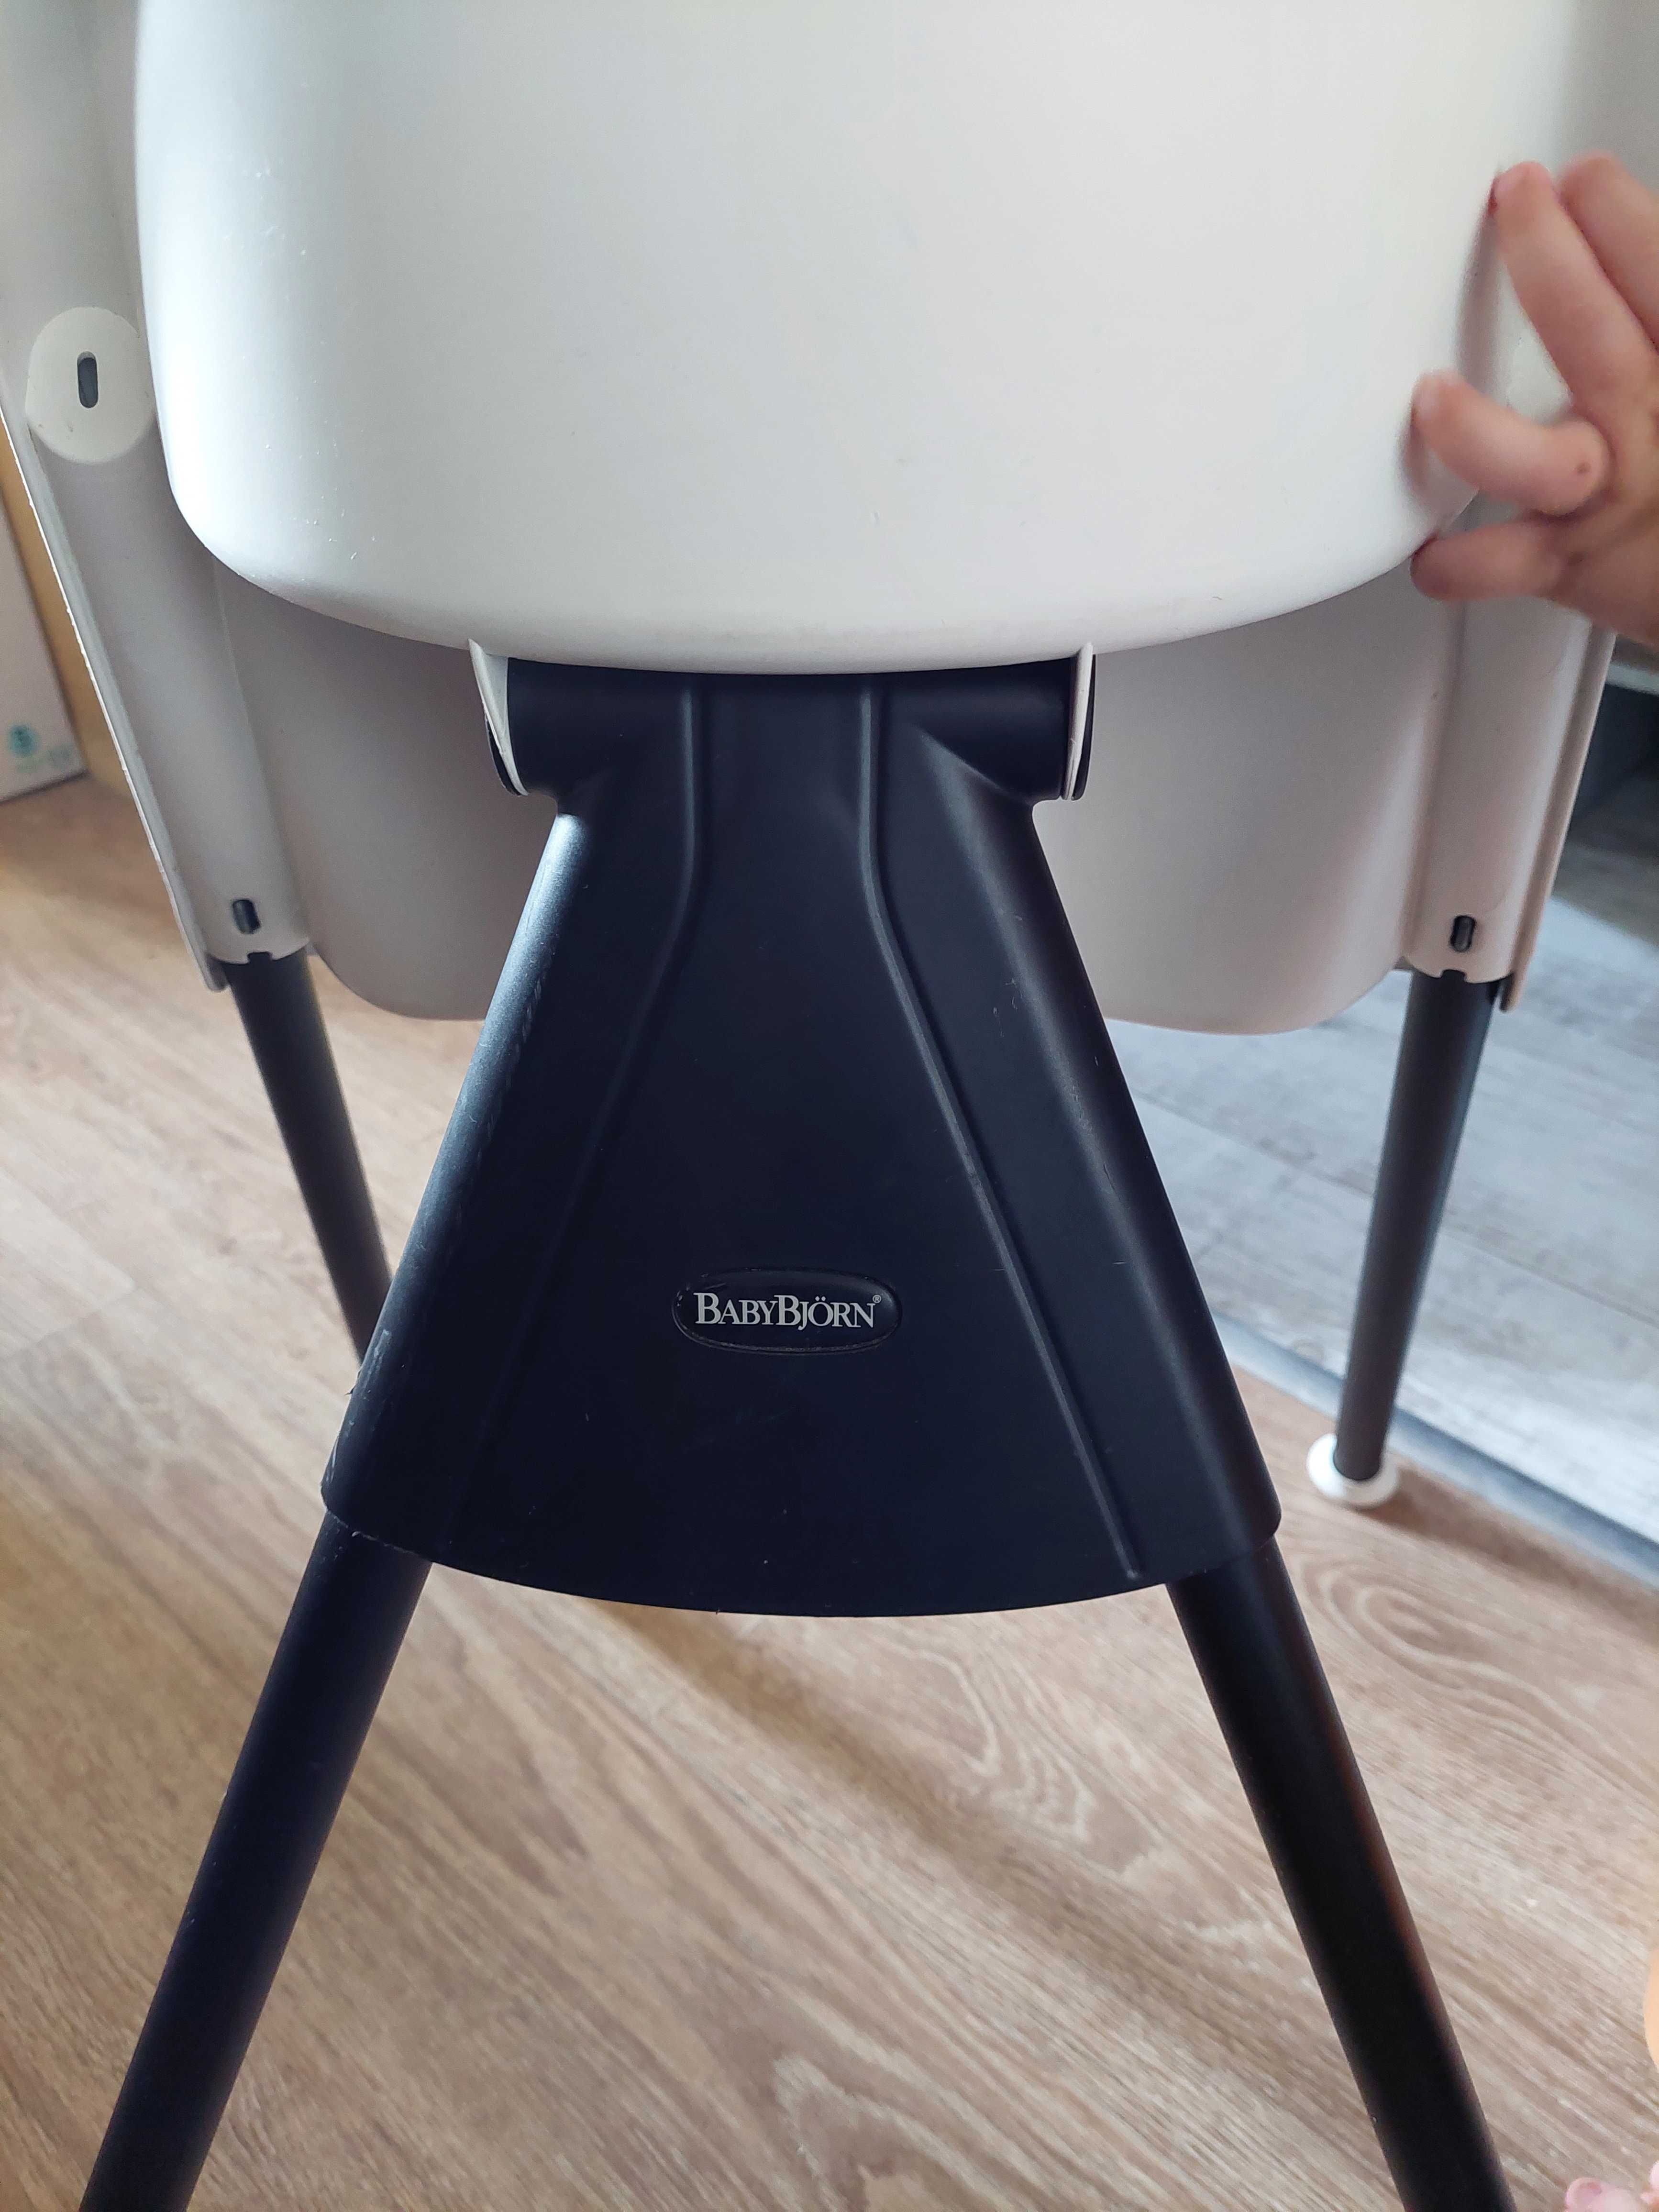 BabyBjörn High Chair krzesełko do karmienia używane